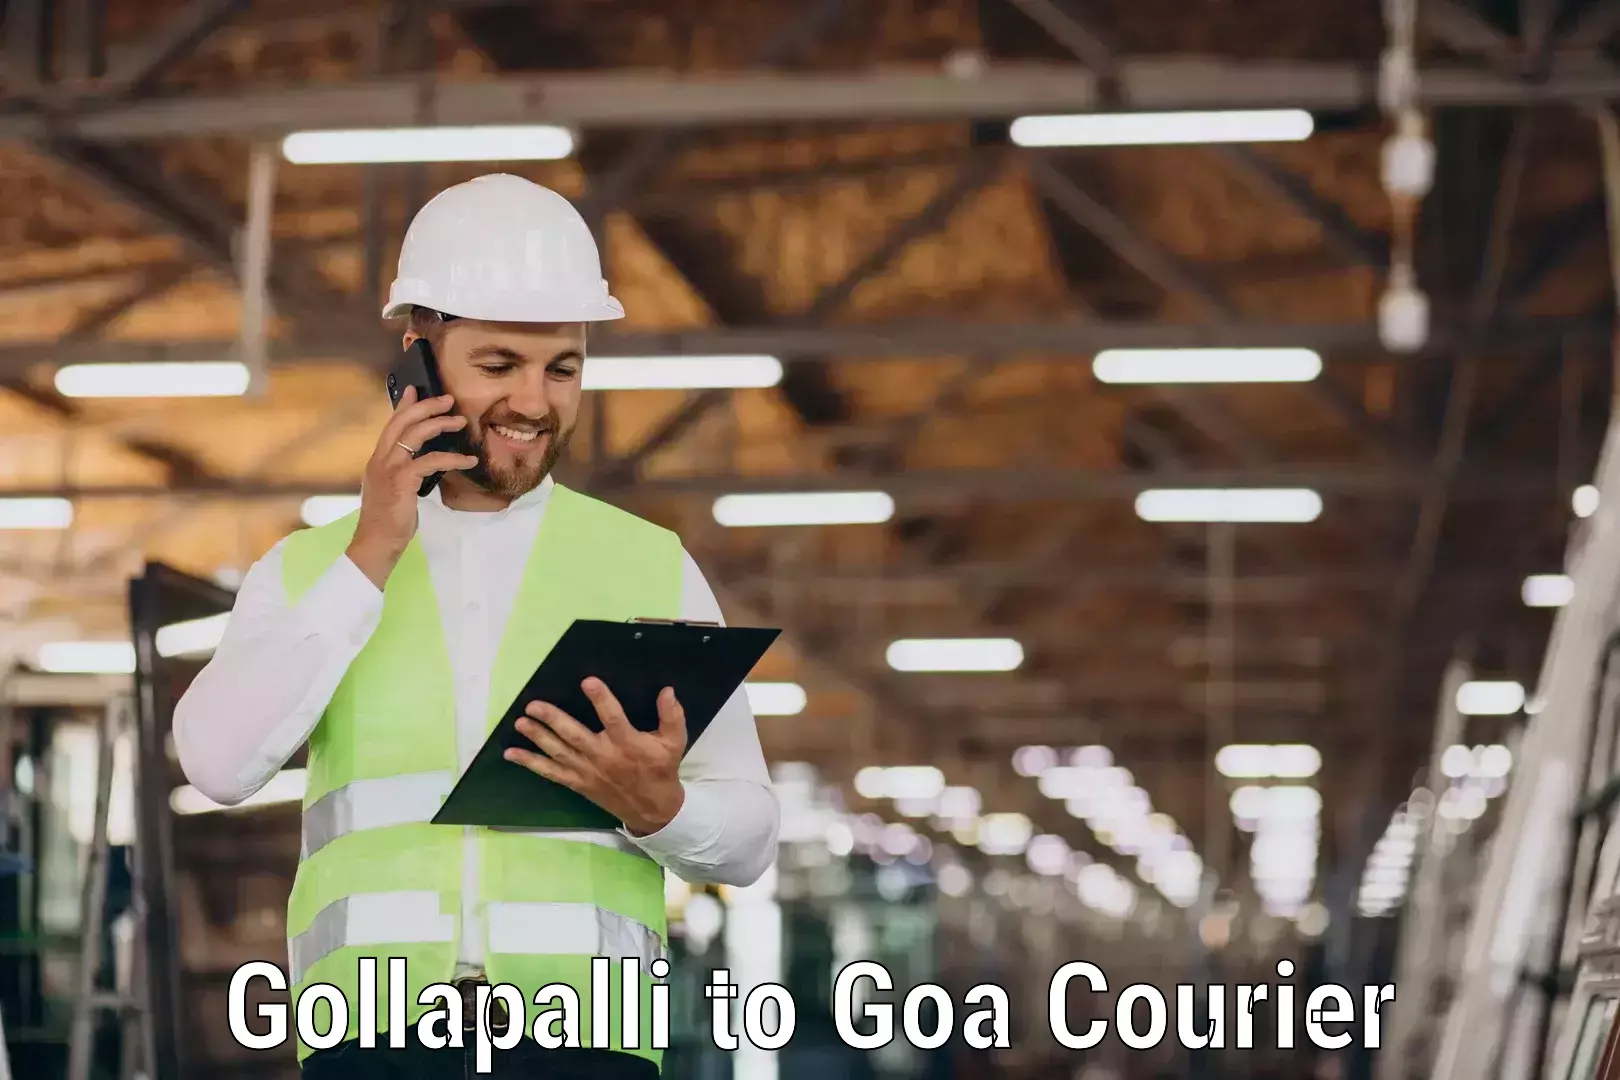 Versatile courier options Gollapalli to NIT Goa